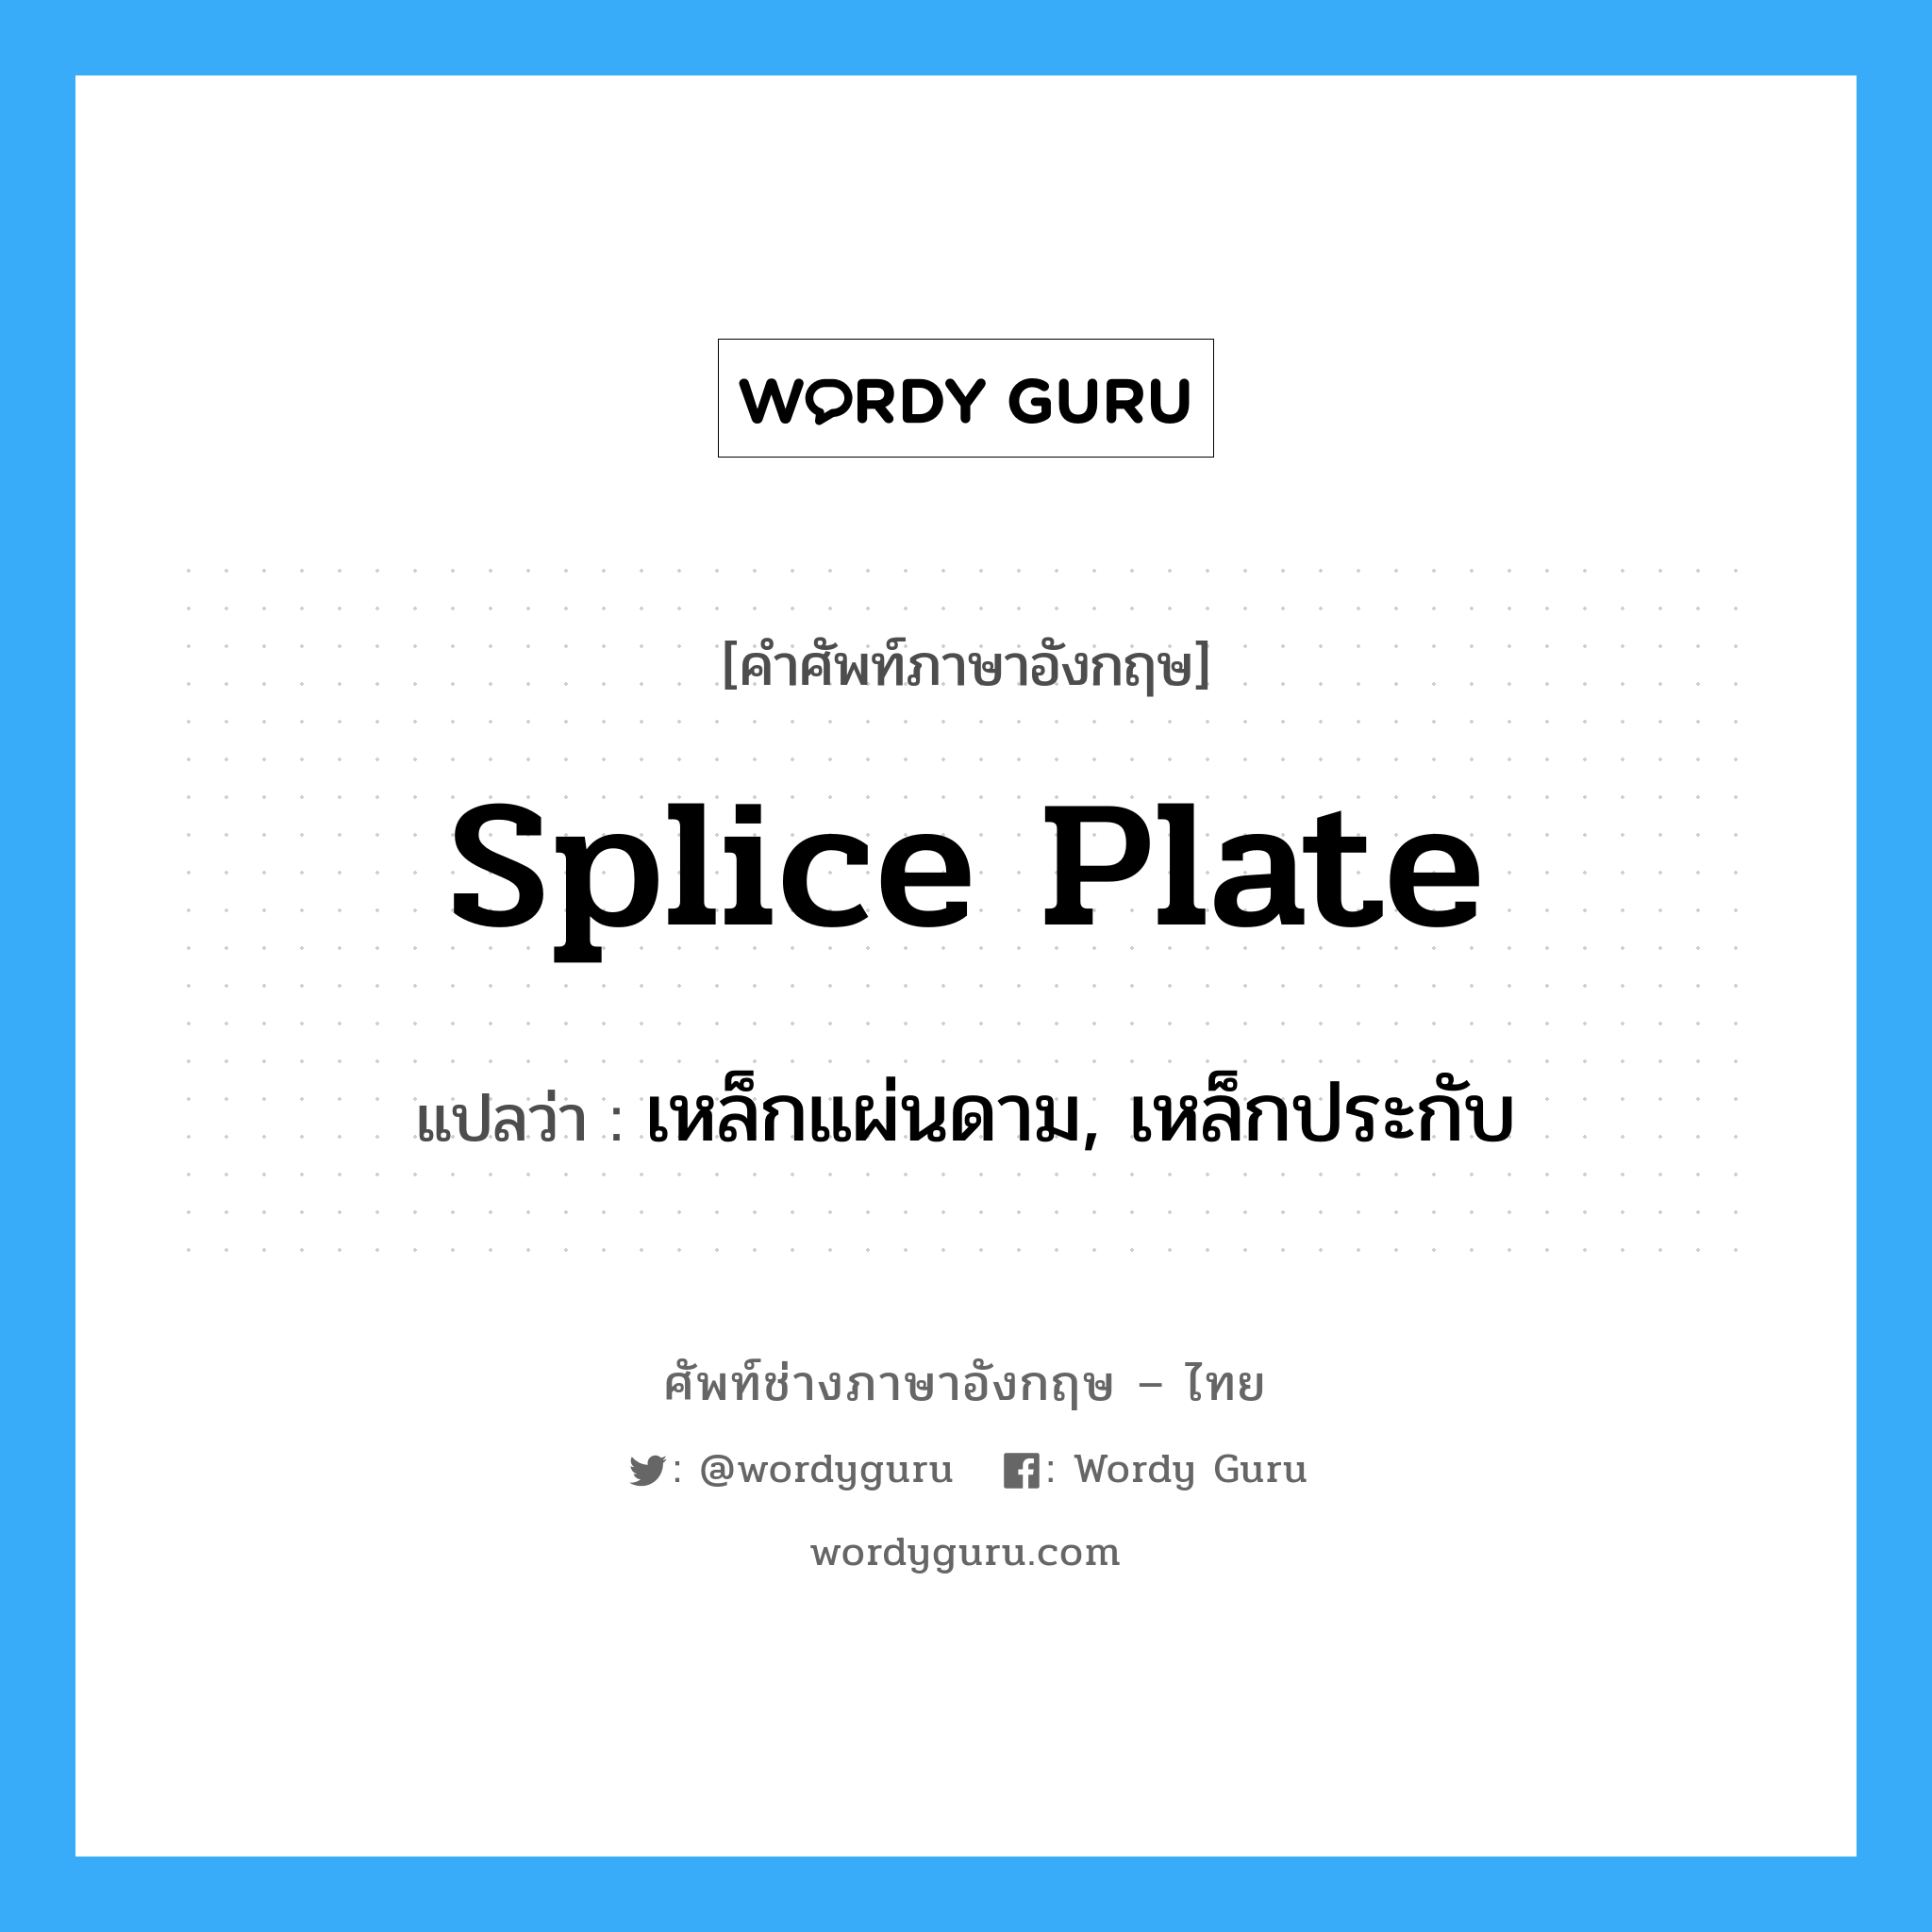 เหล็กแผ่นดาม, เหล็กประกับ ภาษาอังกฤษ?, คำศัพท์ช่างภาษาอังกฤษ - ไทย เหล็กแผ่นดาม, เหล็กประกับ คำศัพท์ภาษาอังกฤษ เหล็กแผ่นดาม, เหล็กประกับ แปลว่า splice plate